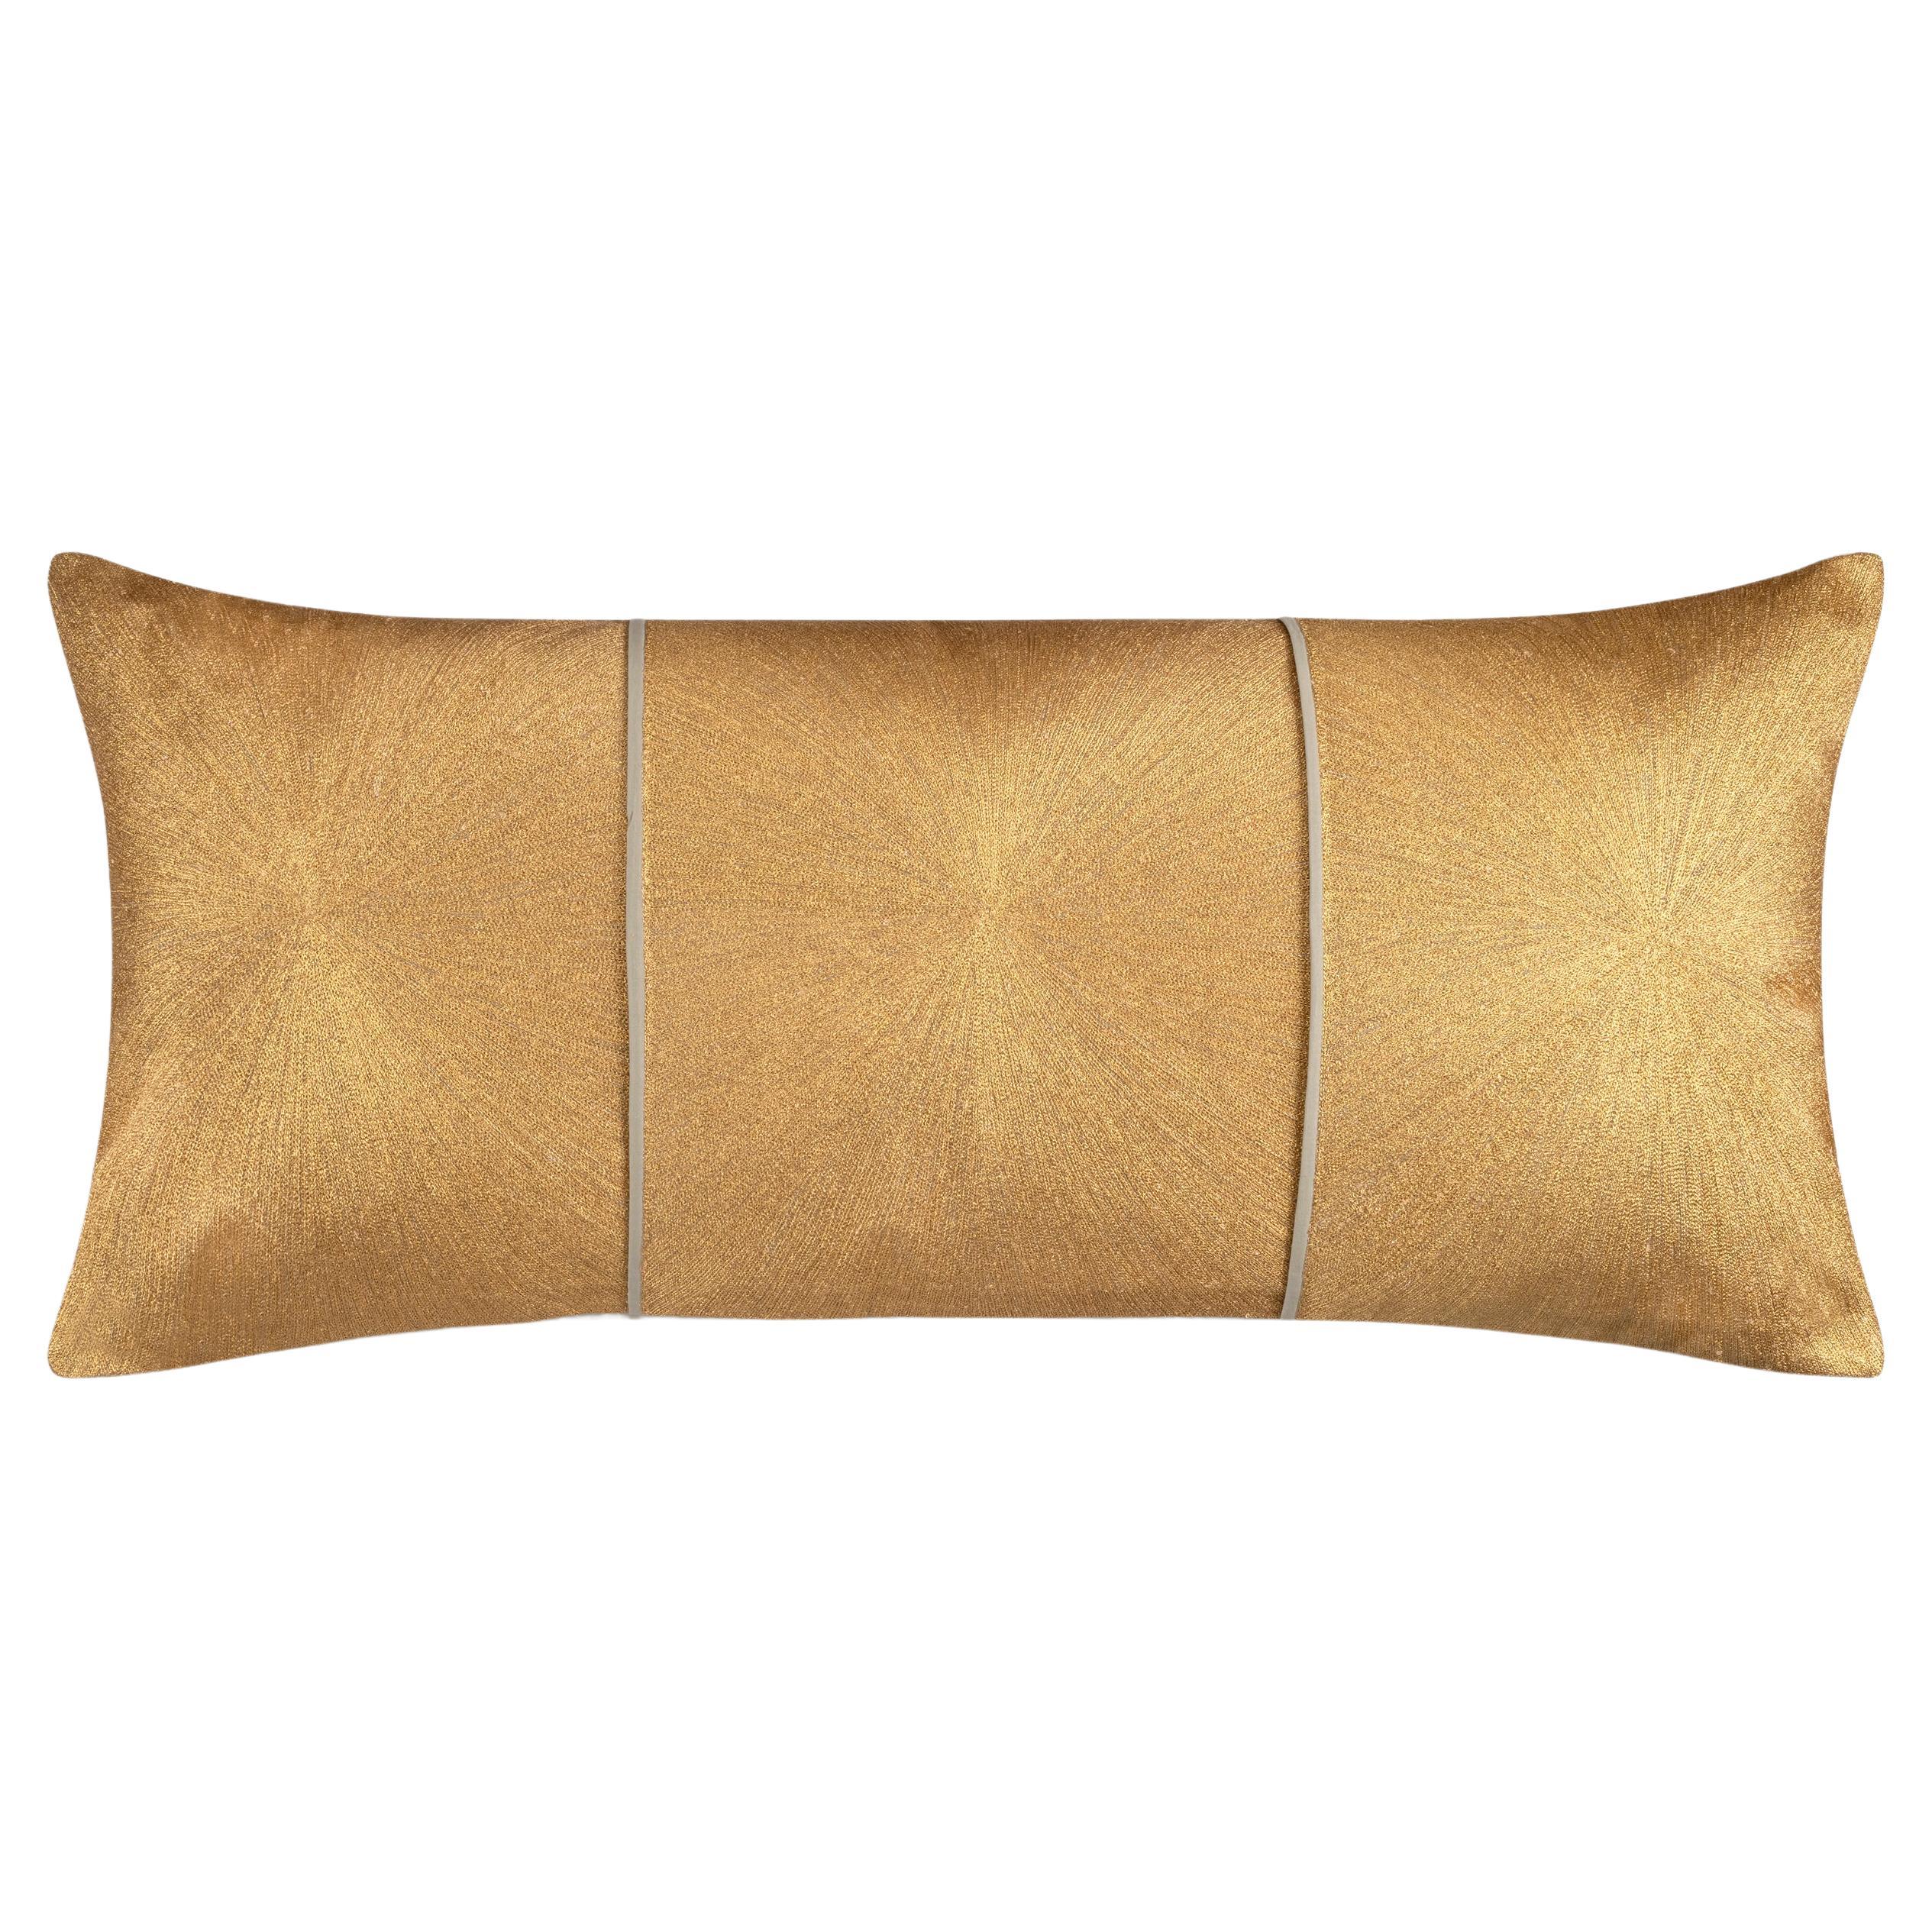 Nimbus Lumbar Pillow, Light Brown Linen For Sale